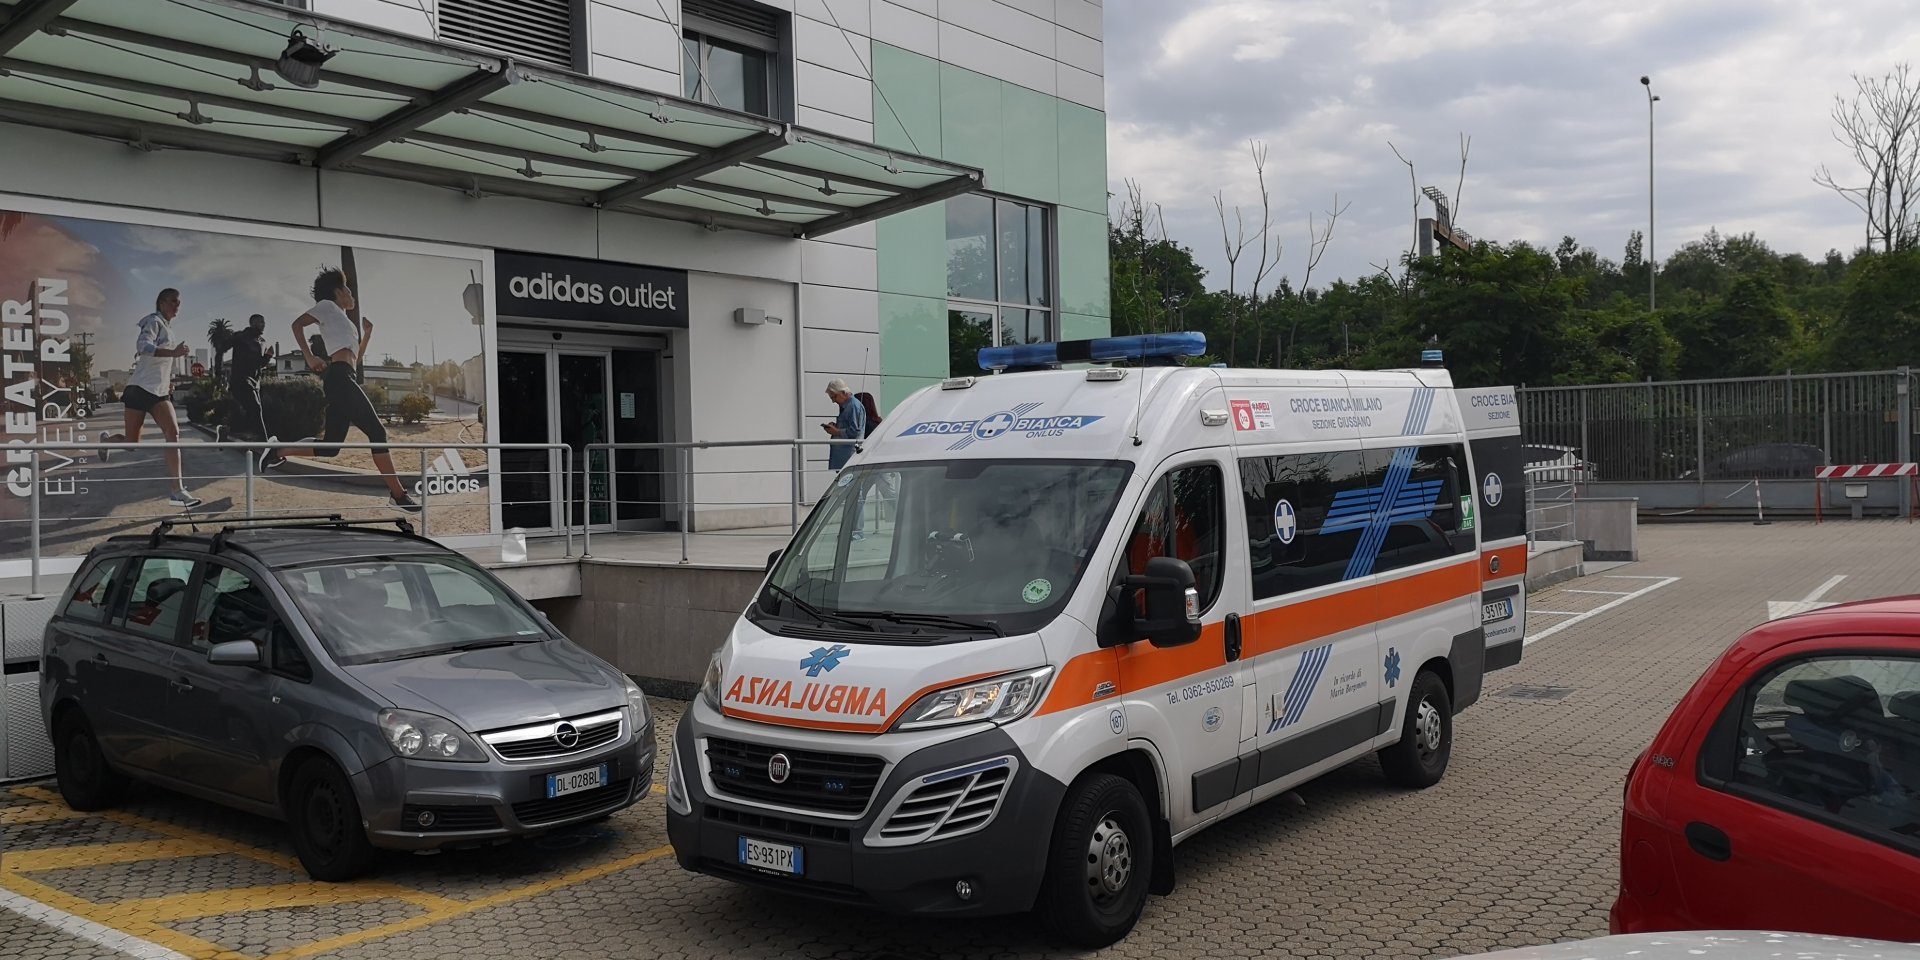 Malore allo store di Adidas, arriva l'ambulanza - Prima Monza